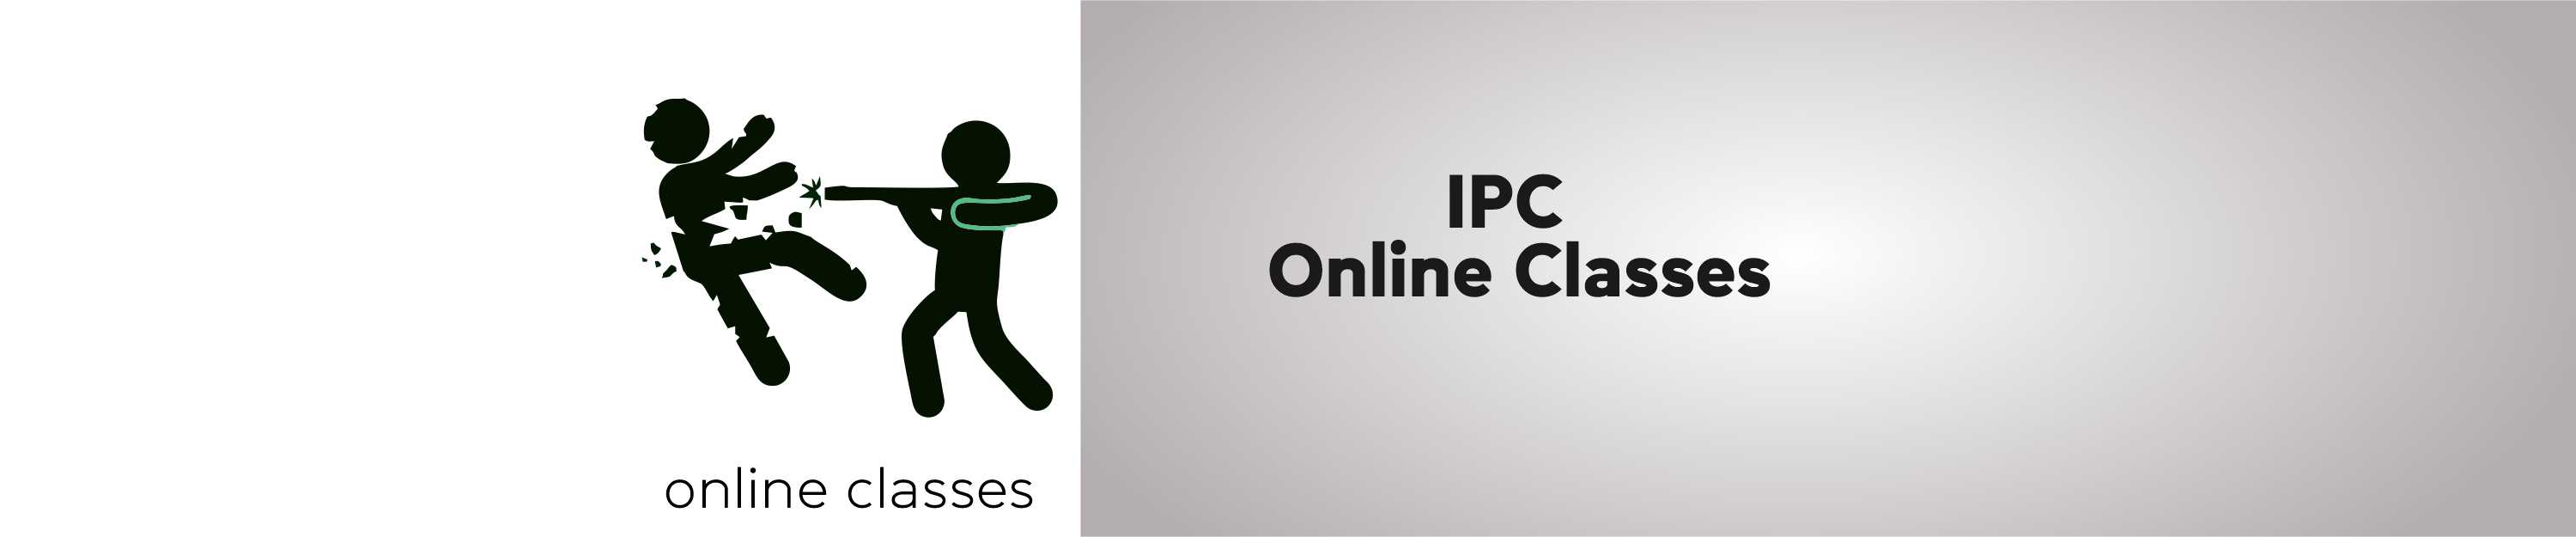 IPC ONLINE CLASSES